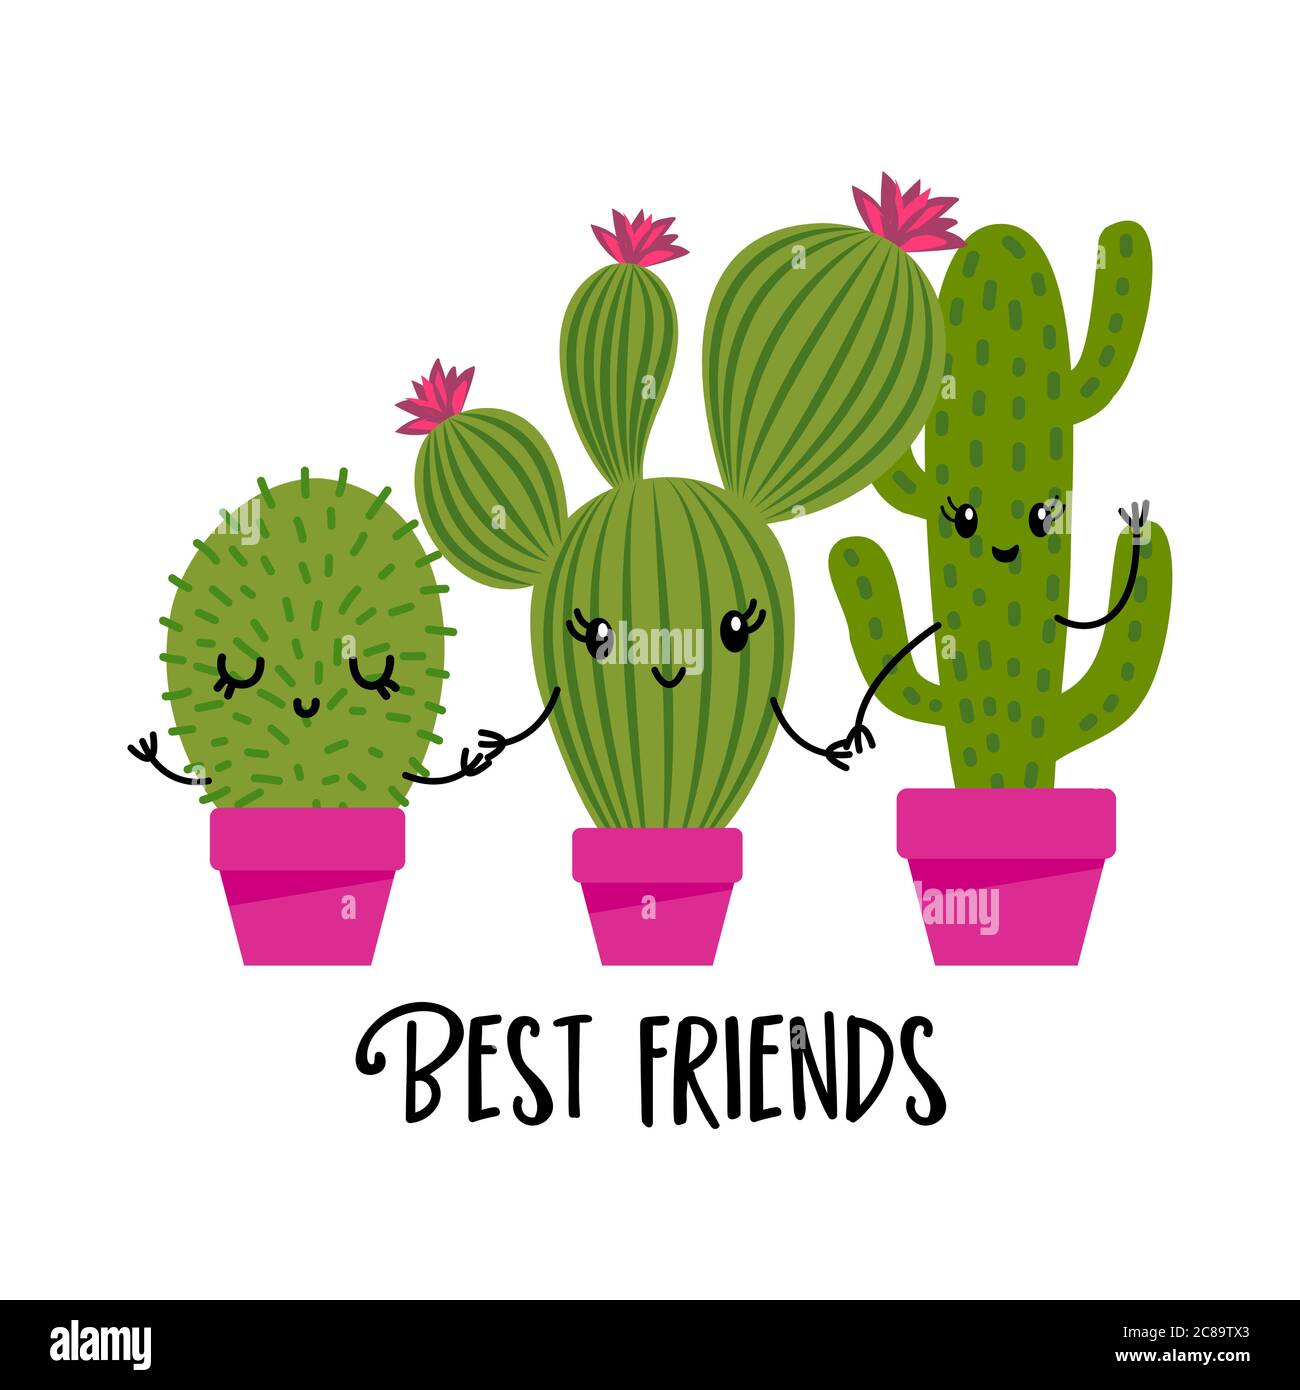 Meilleurs amis - joli imprimé cactus dessiné à la main avec citation amusante et inspirante. Plantes mexicaines. Mignon dicton avec des crocs verts. Affiche d'été style Doodle Illustration de Vecteur